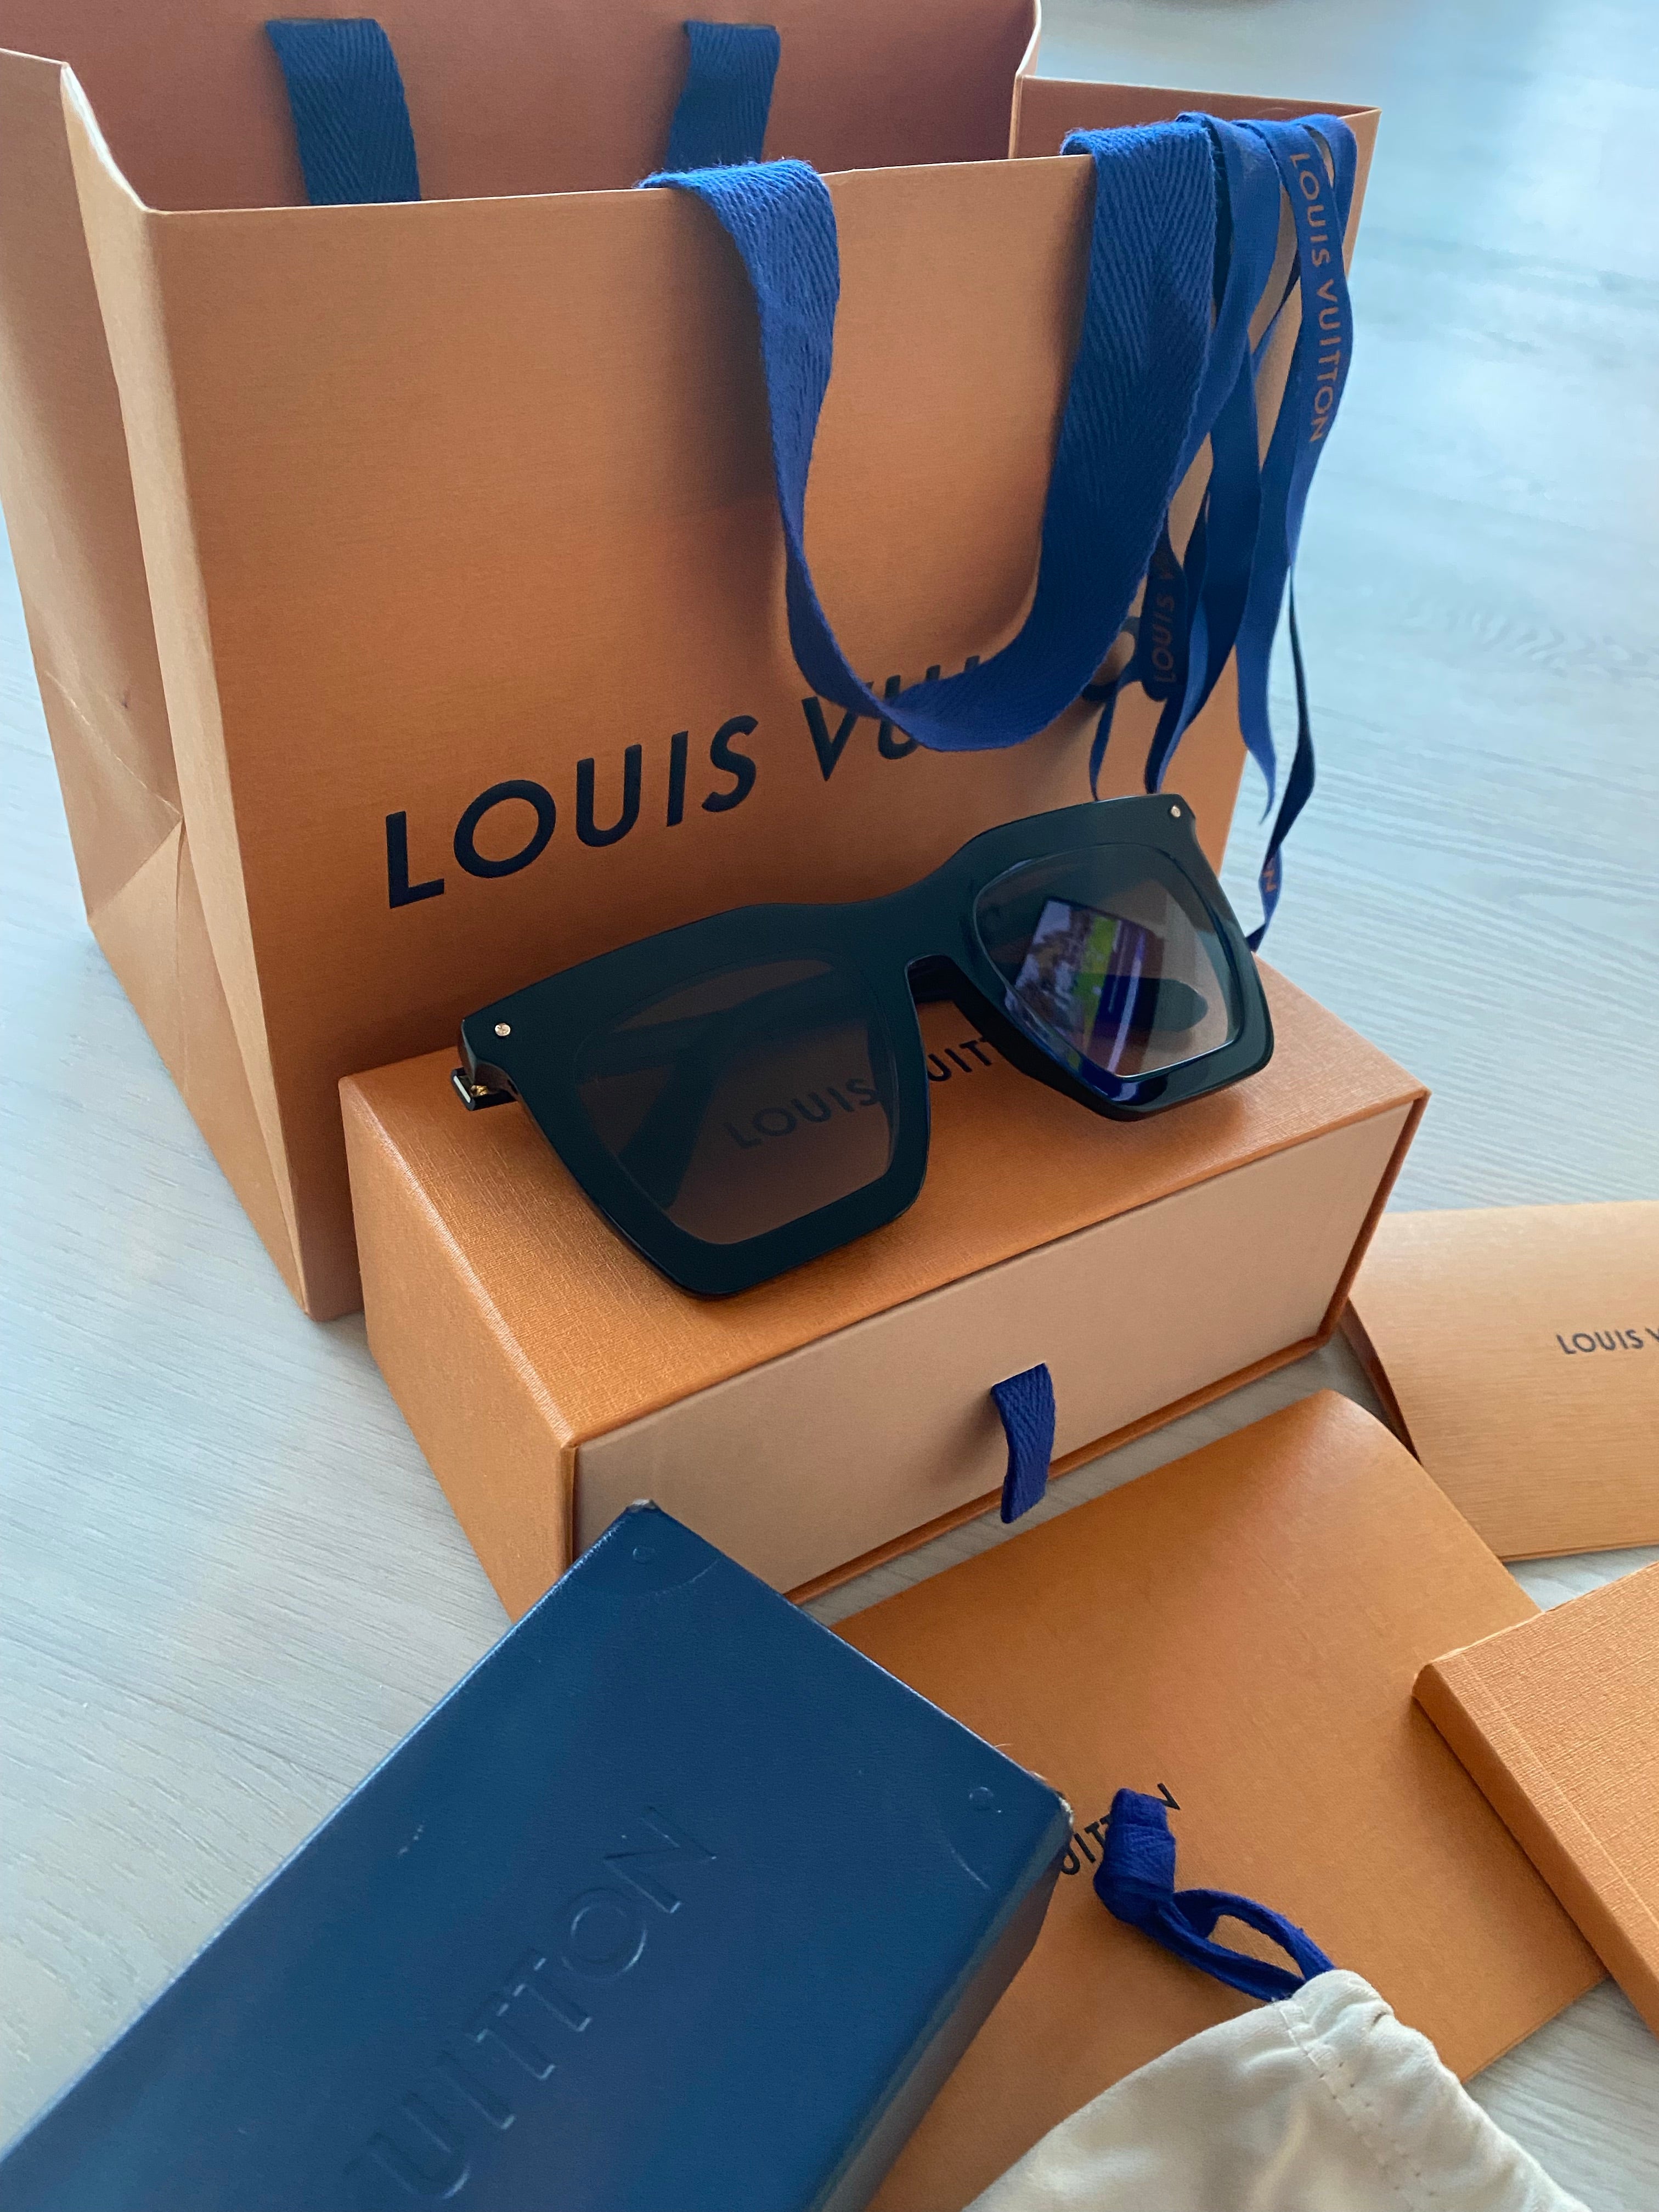 Product Louis vuitton La Grande Bellezza Sunglasses worn by Venita